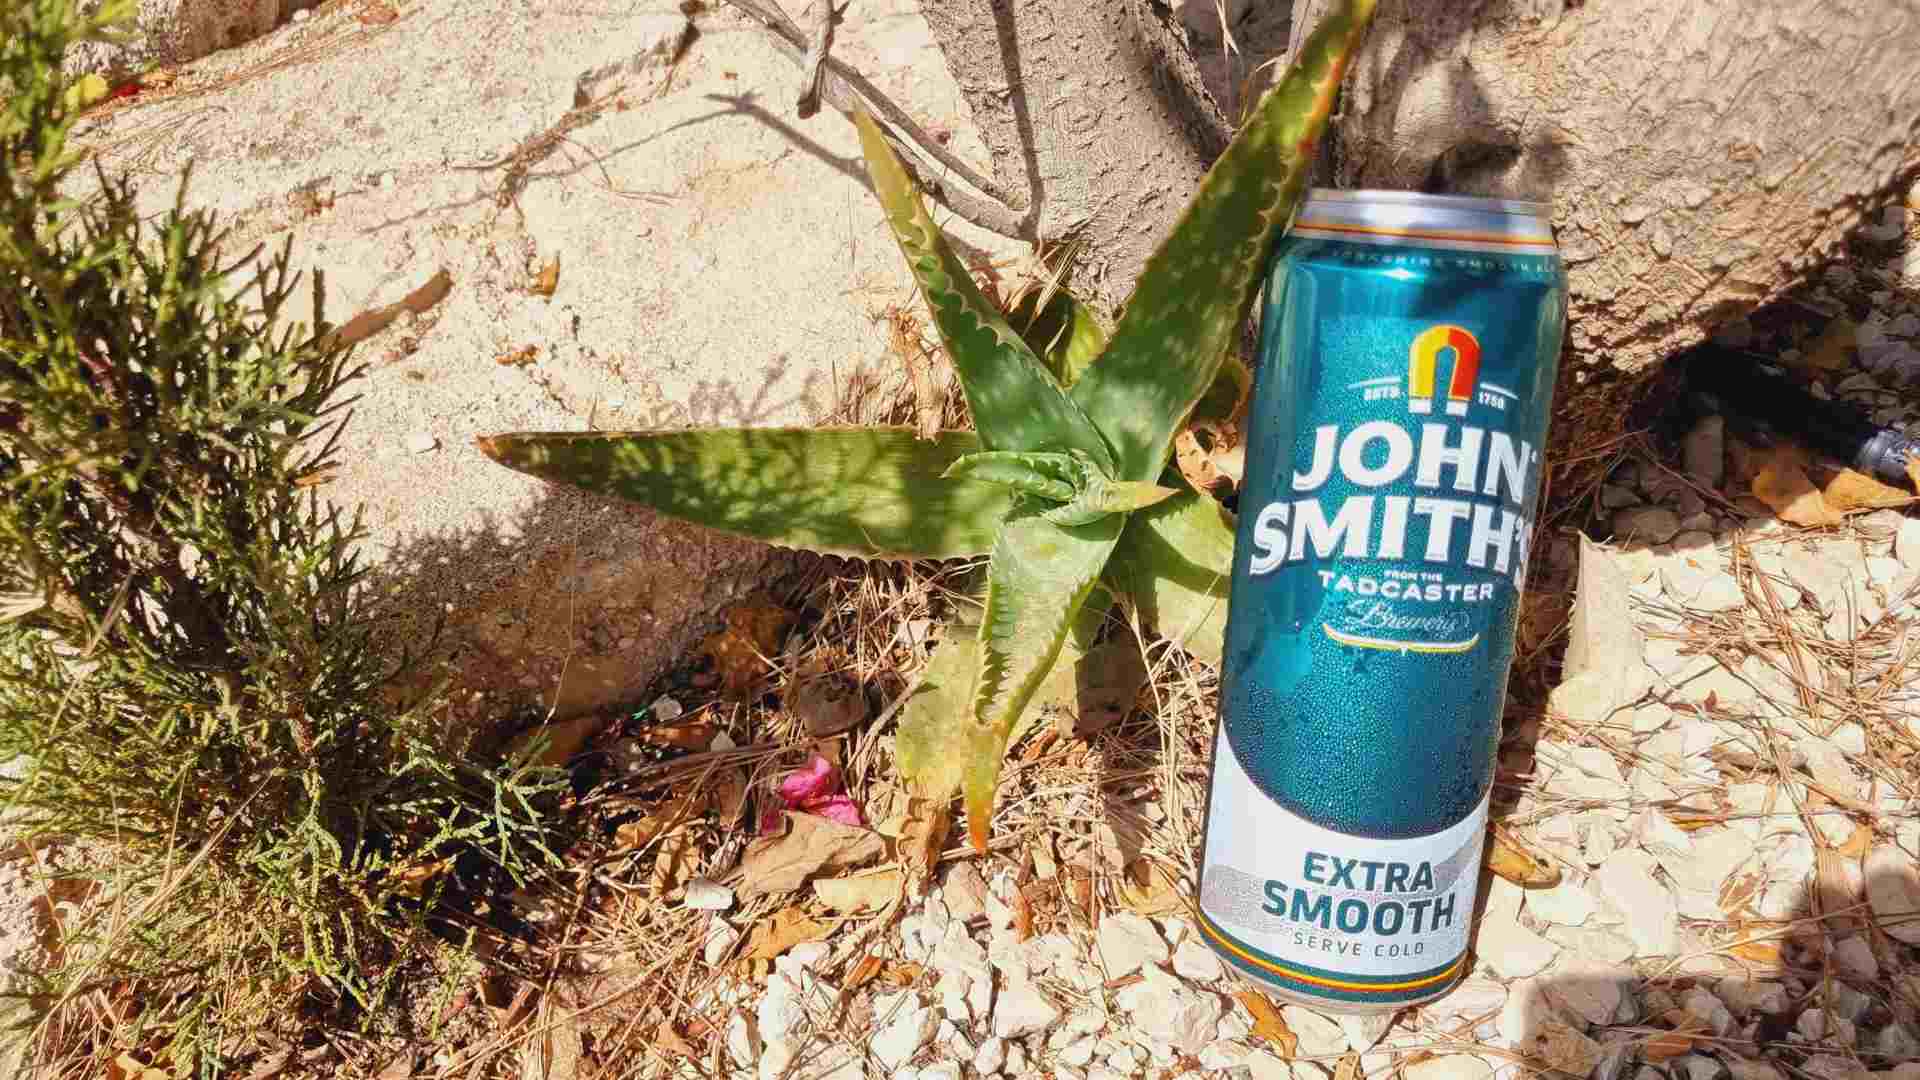 John Smiths Extra Smooth Bierwertung.de Bierwertung Biertest3